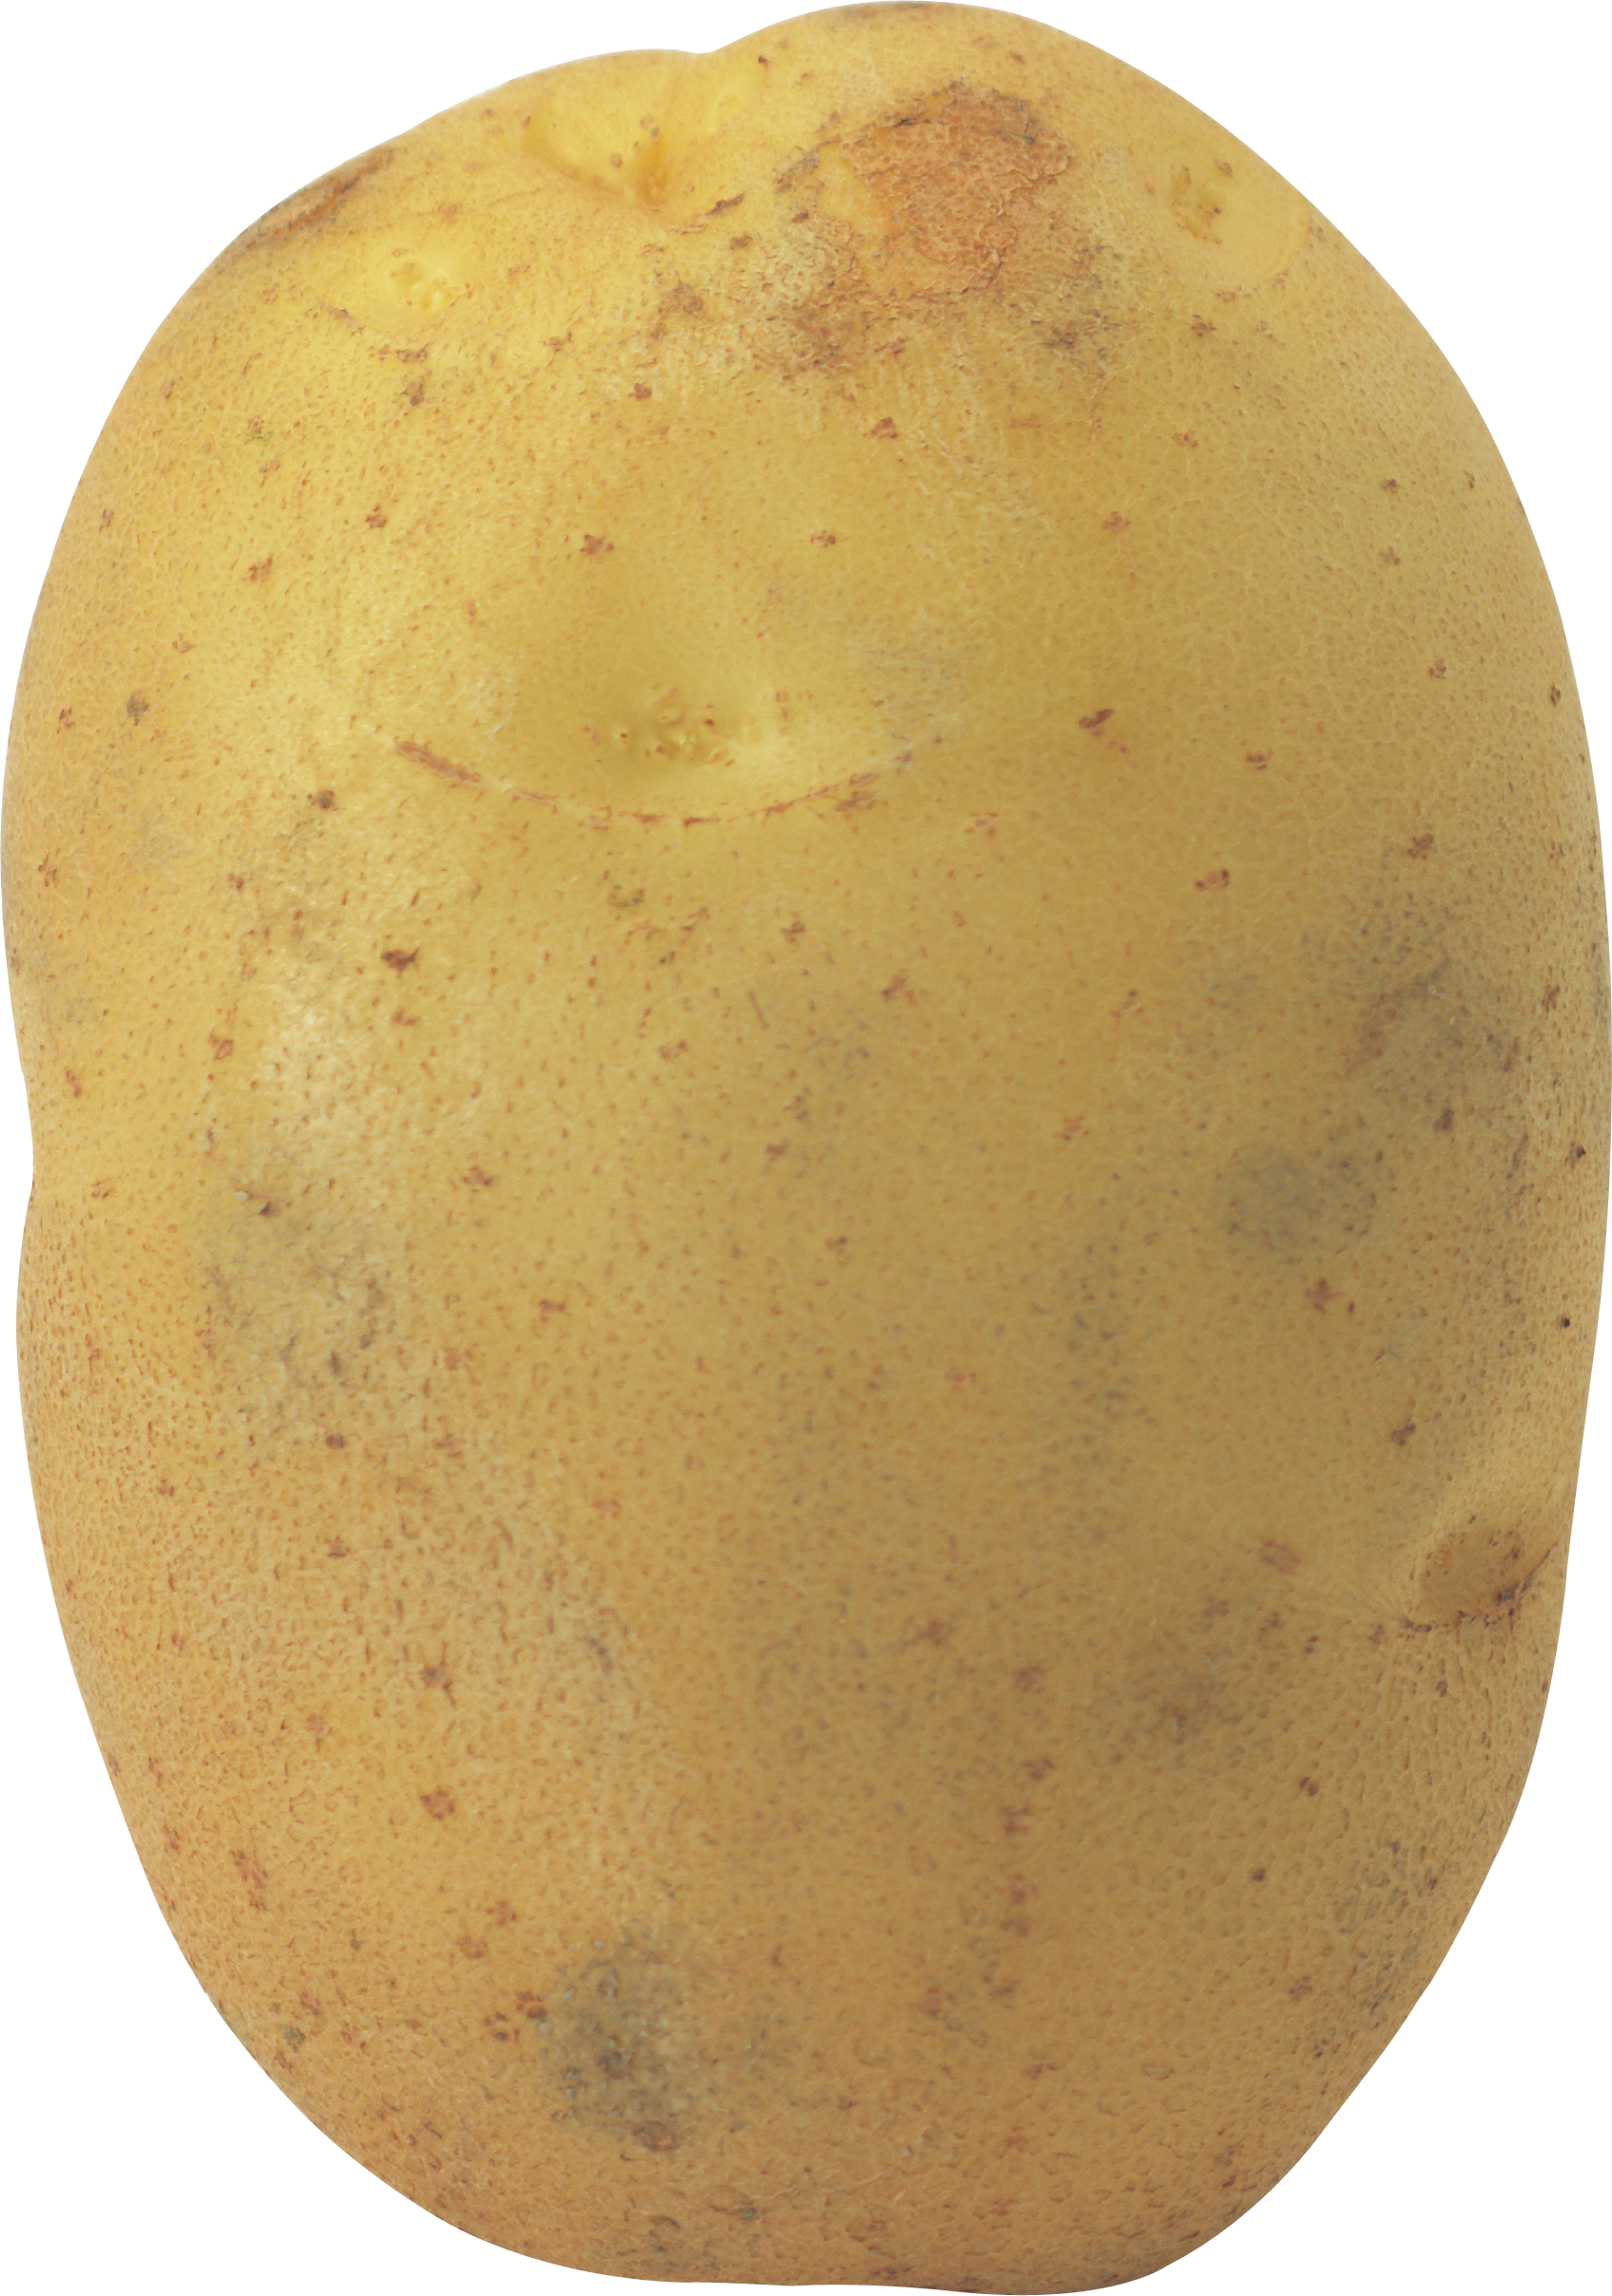 Potato PNG images